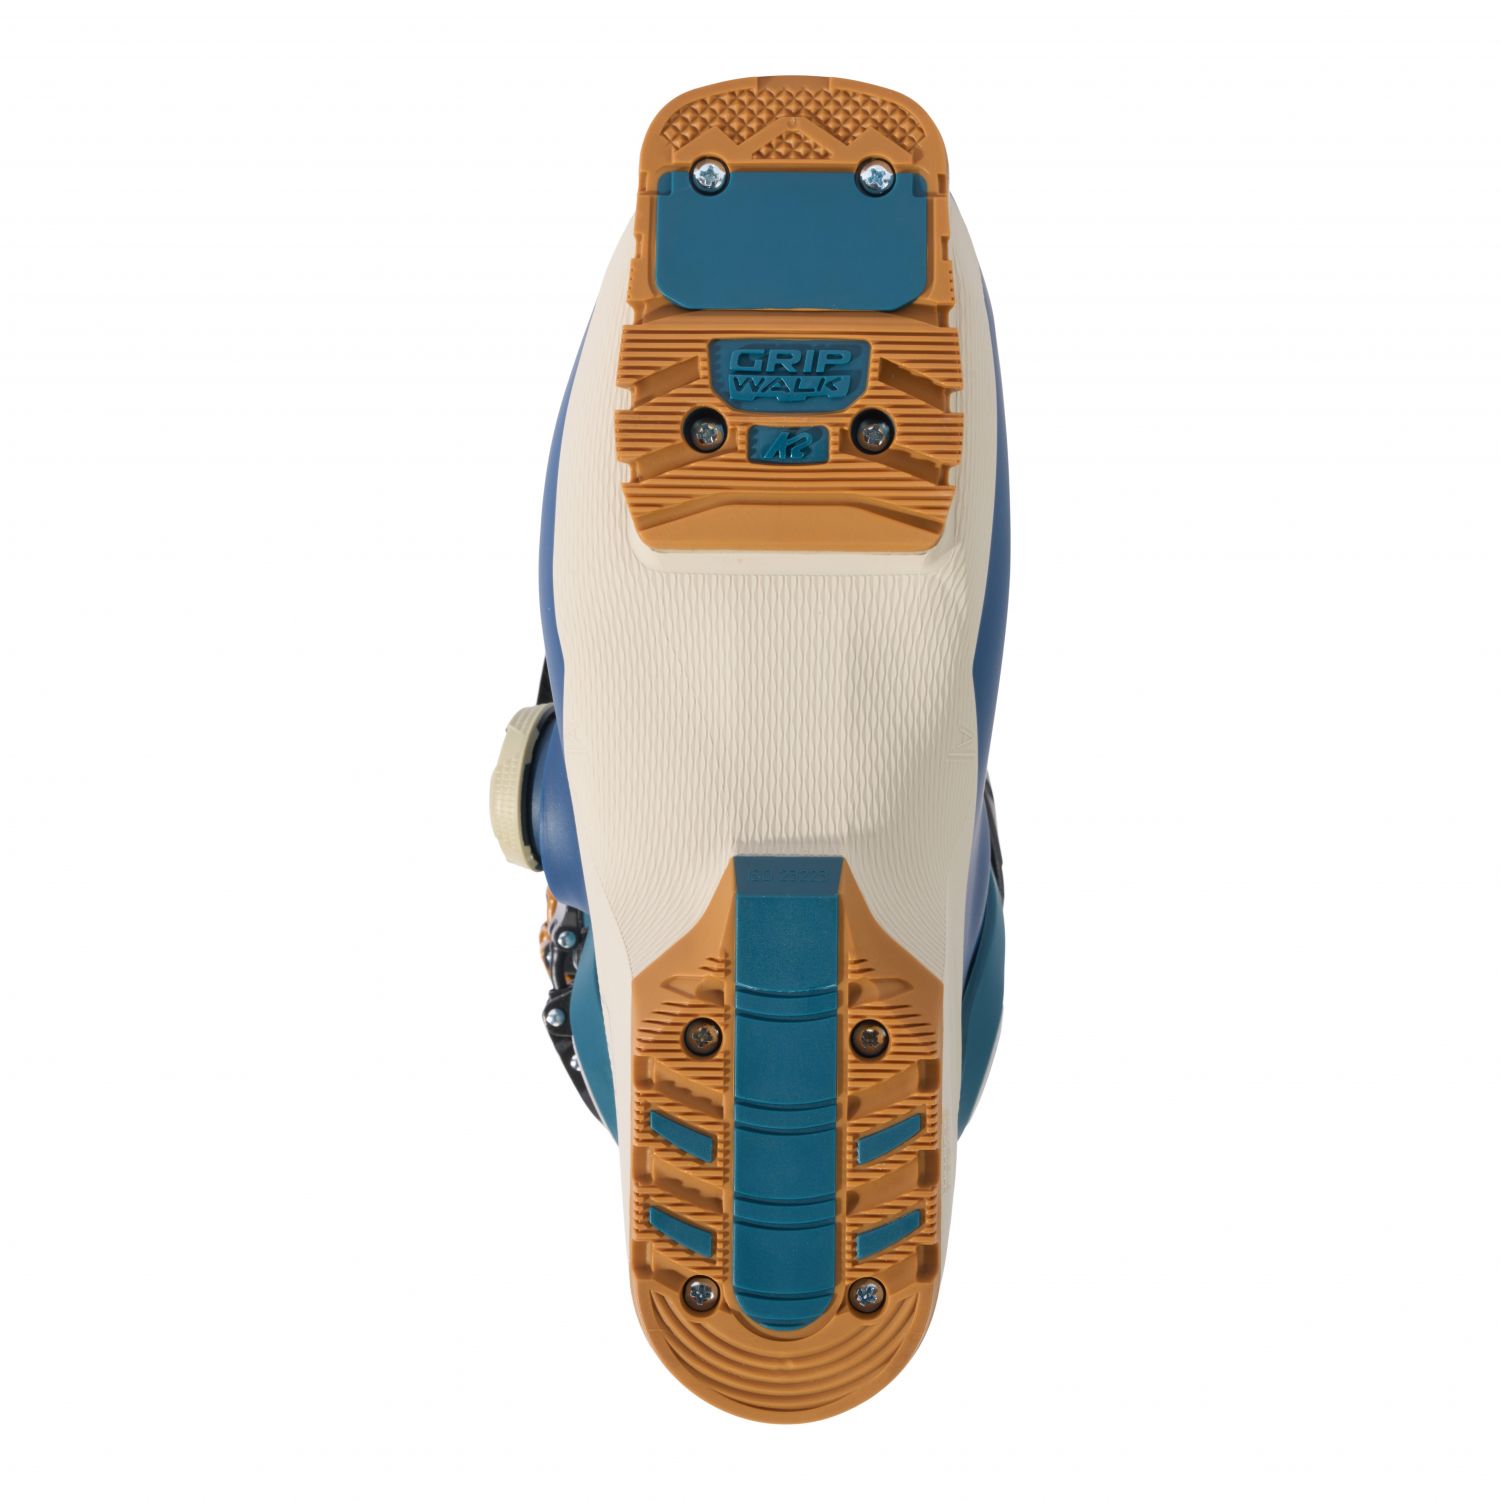 K2 Recon 120 BOA, skischoenen, meneer, blauw/beige